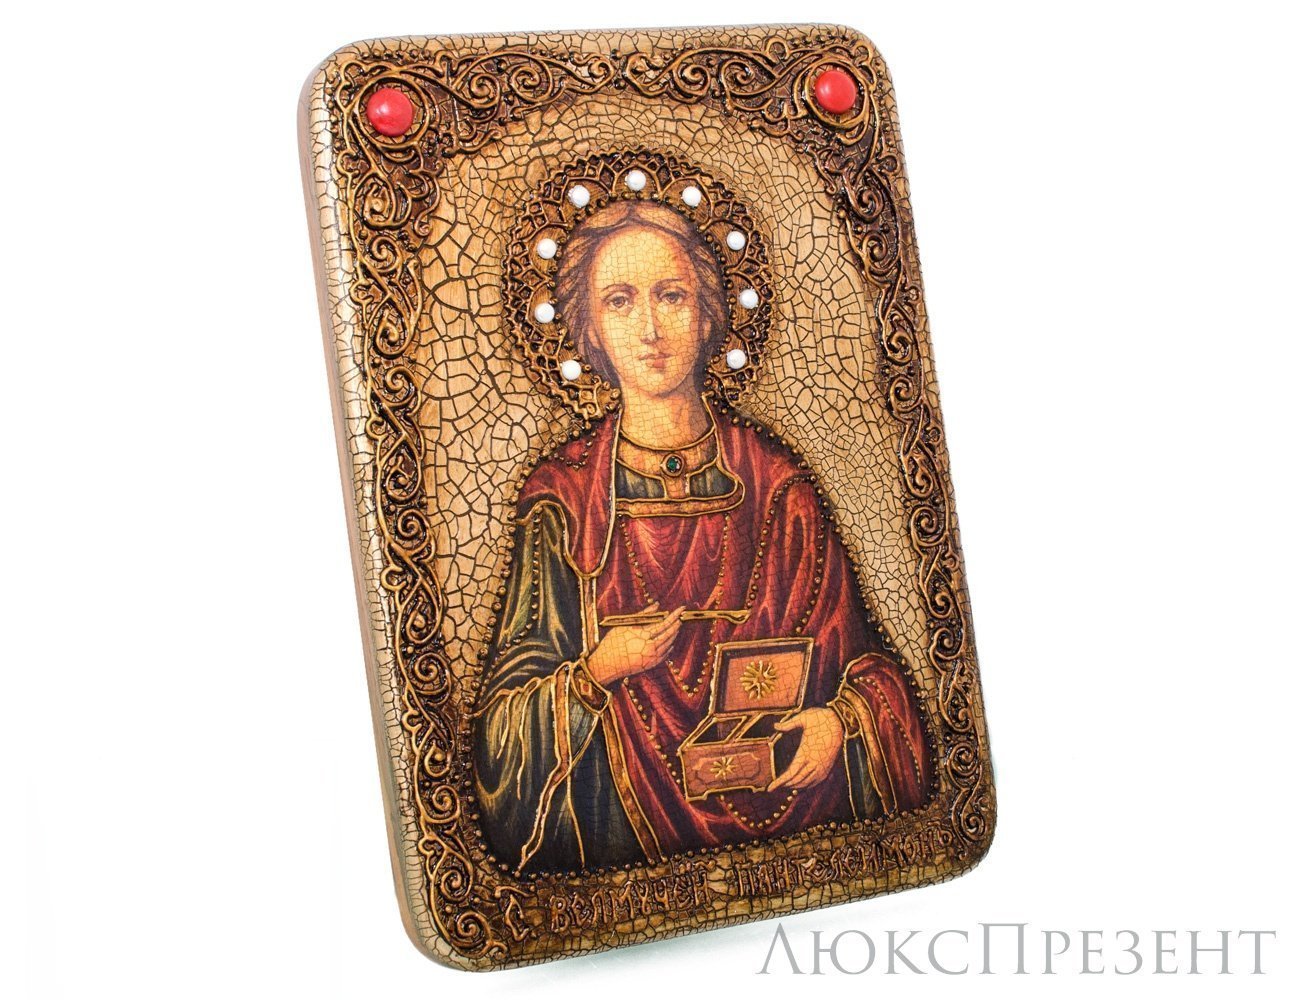 Подарочная икона Святой Великомученик Пантелеймон